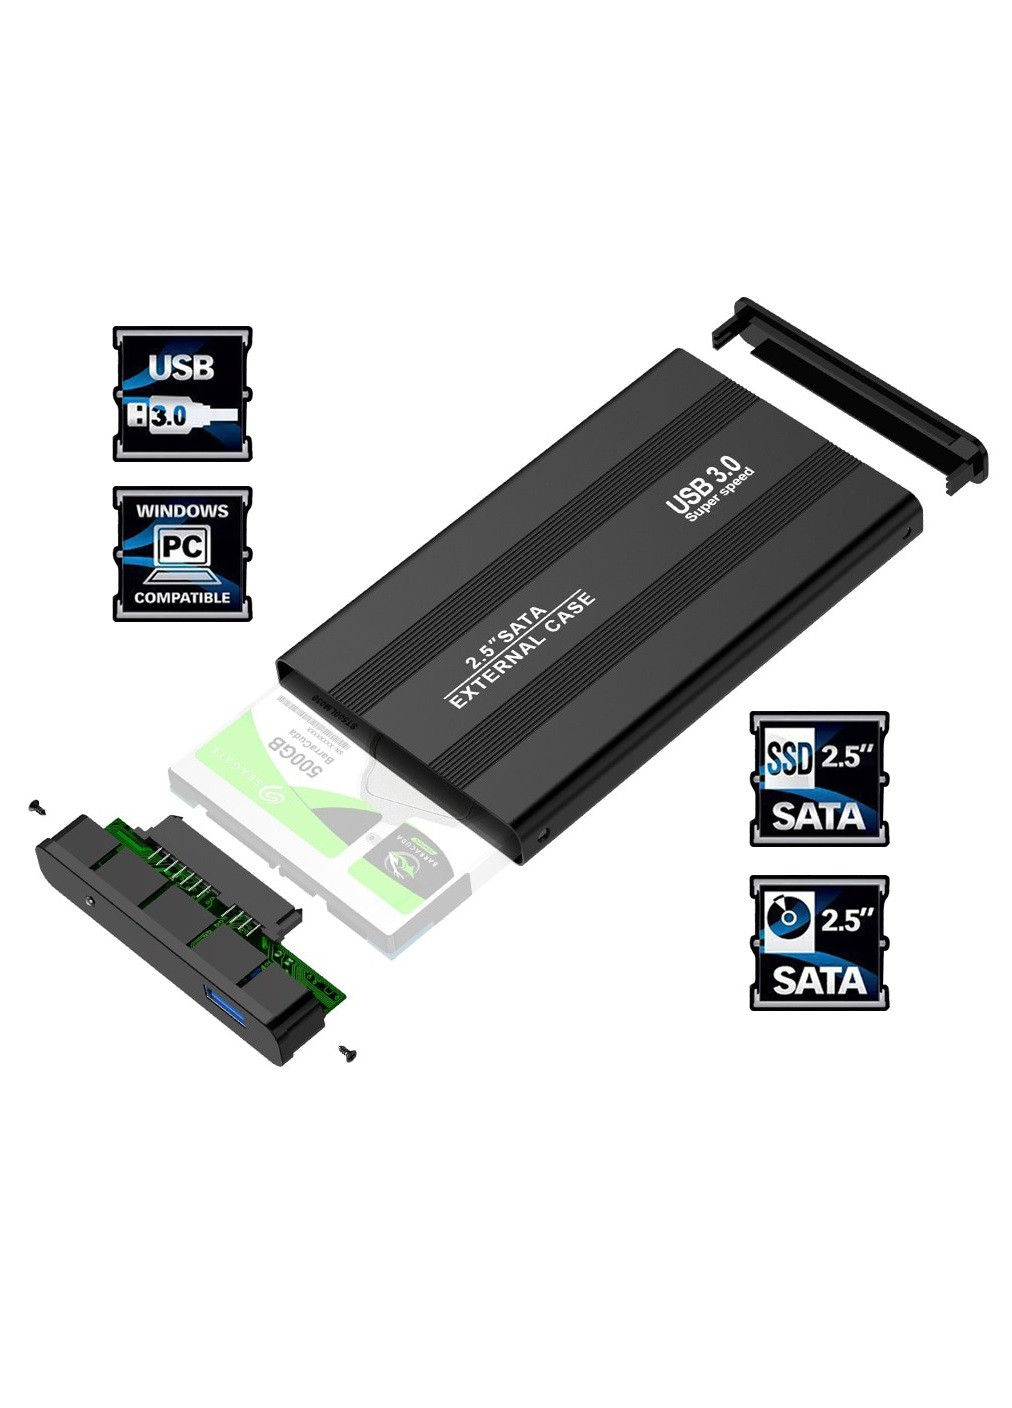 Внешний карман переходник адаптер для USB 3.0 для SSD/HDD диска SATA III 2.5” 127x75x13 мм (474505-Prob) Черный Unbranded (258617383)